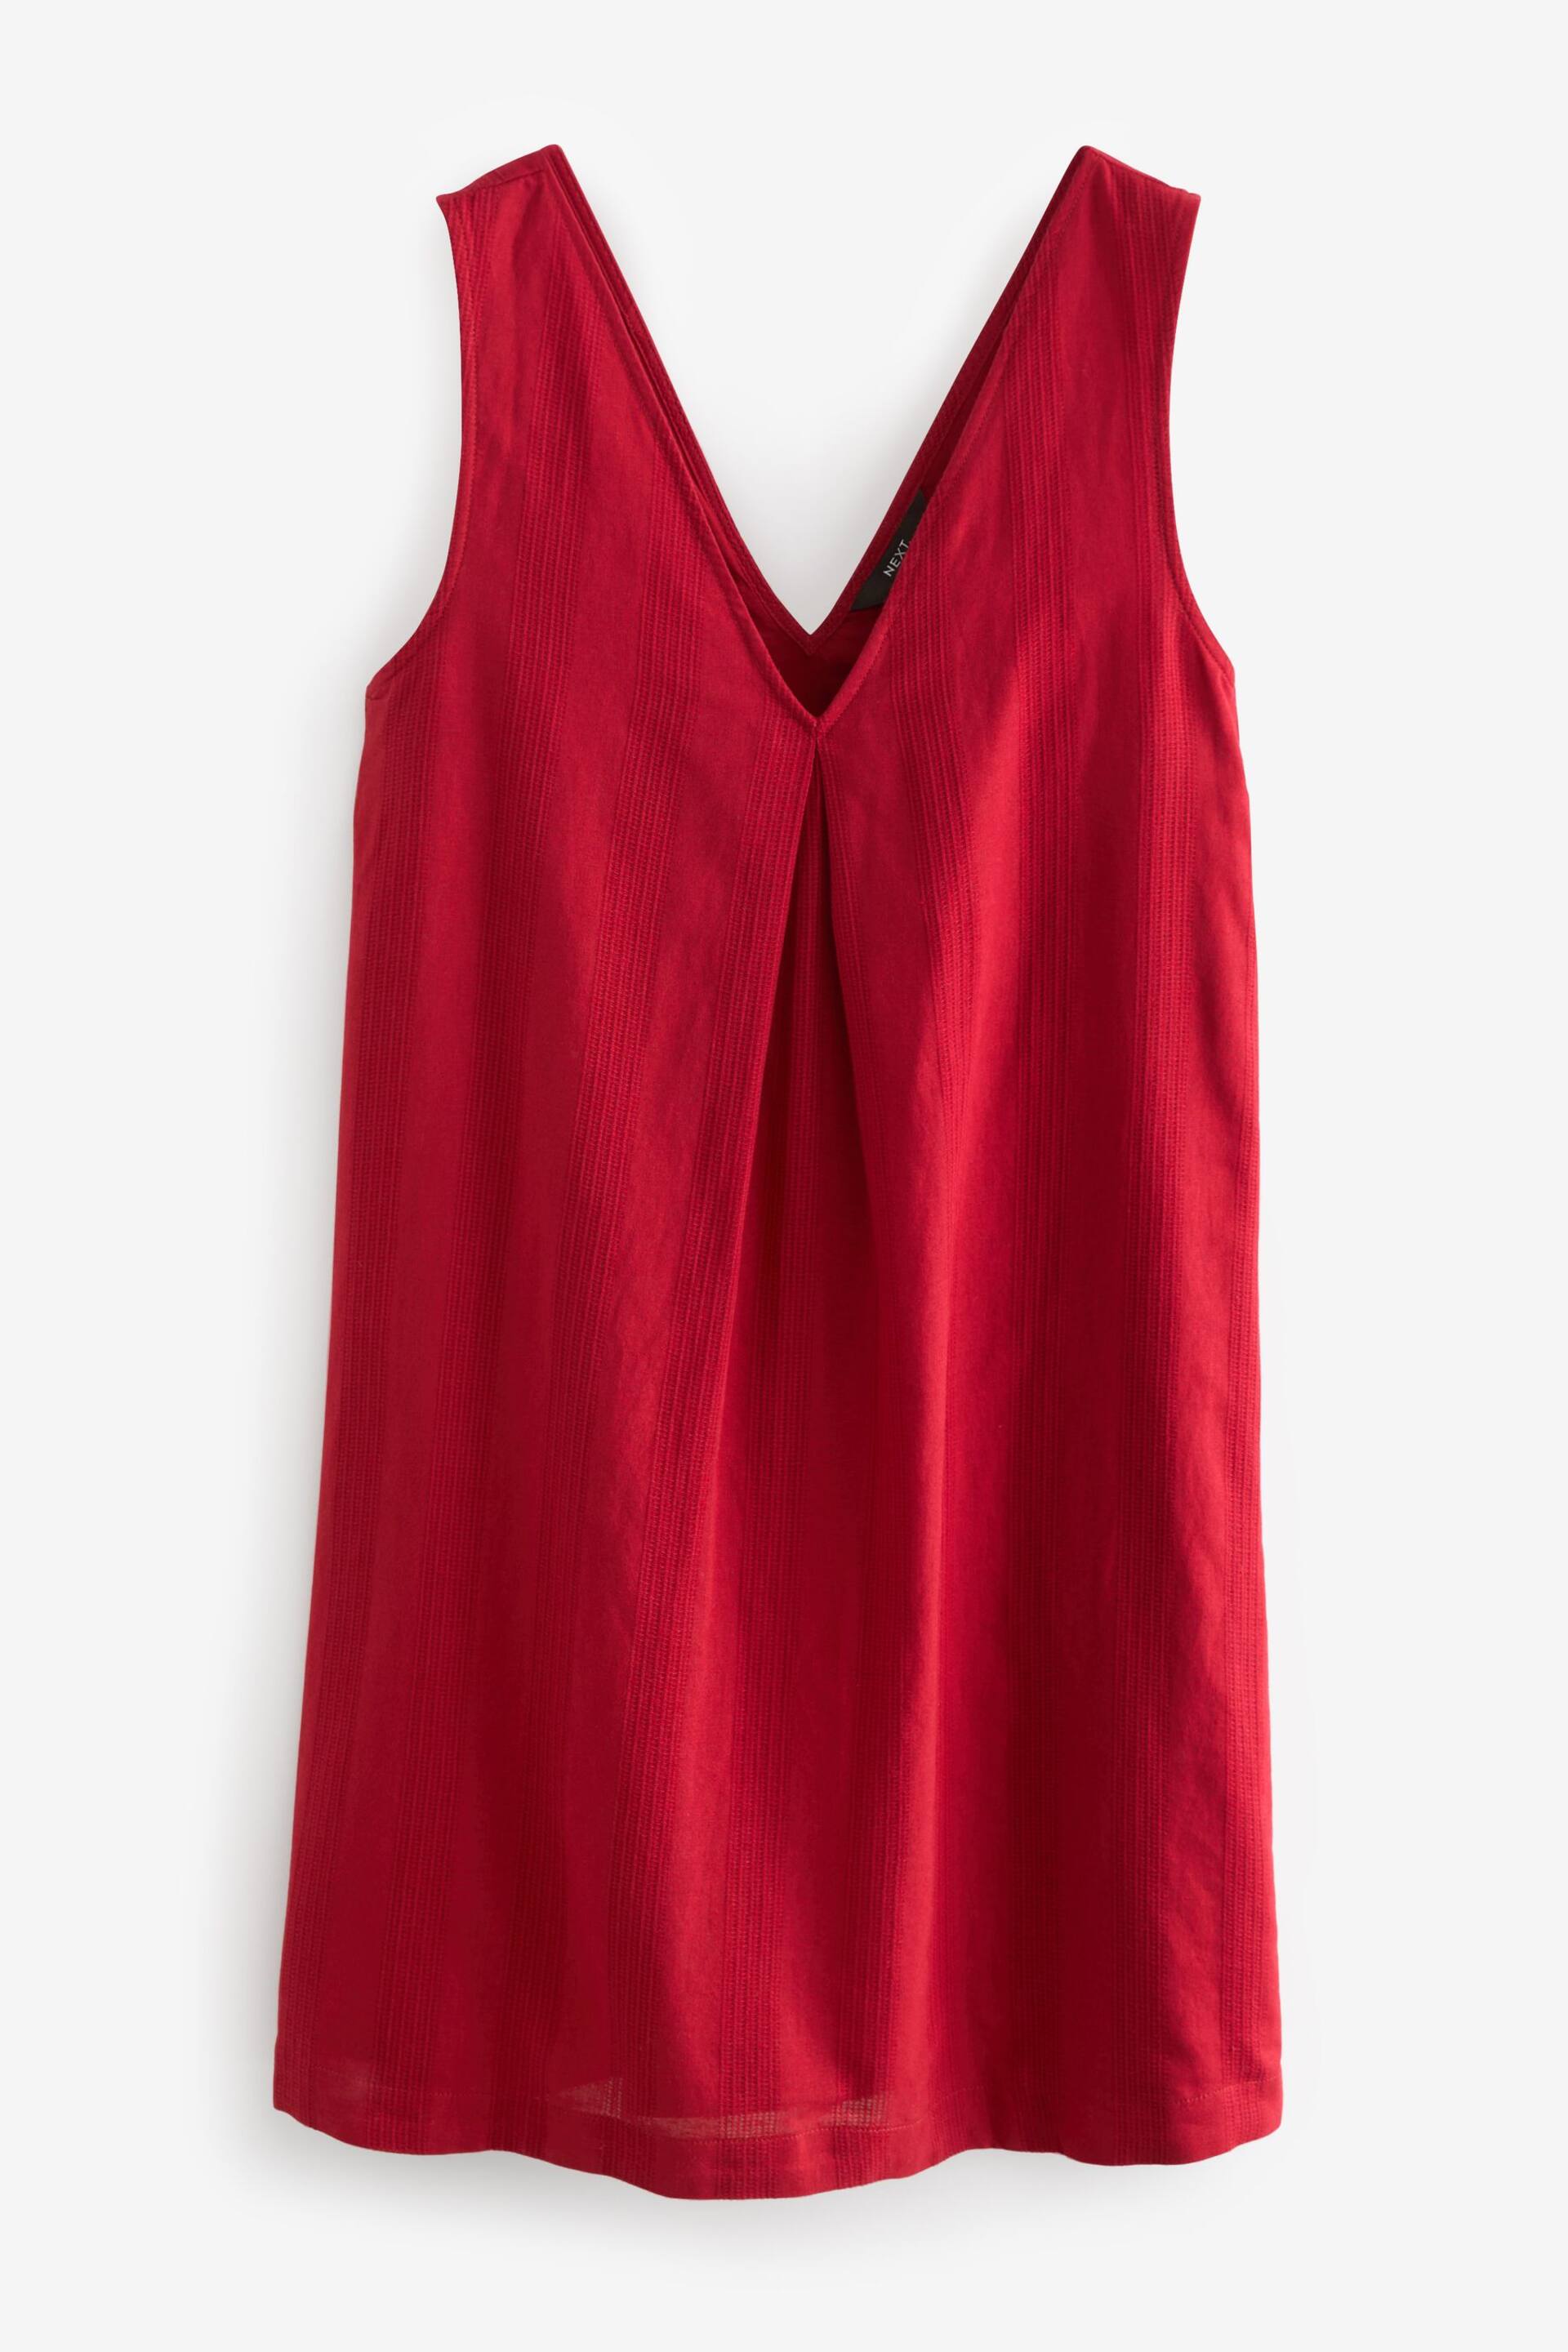 Red Linen Blend V-Neck Summer Mini Dress - Image 5 of 6